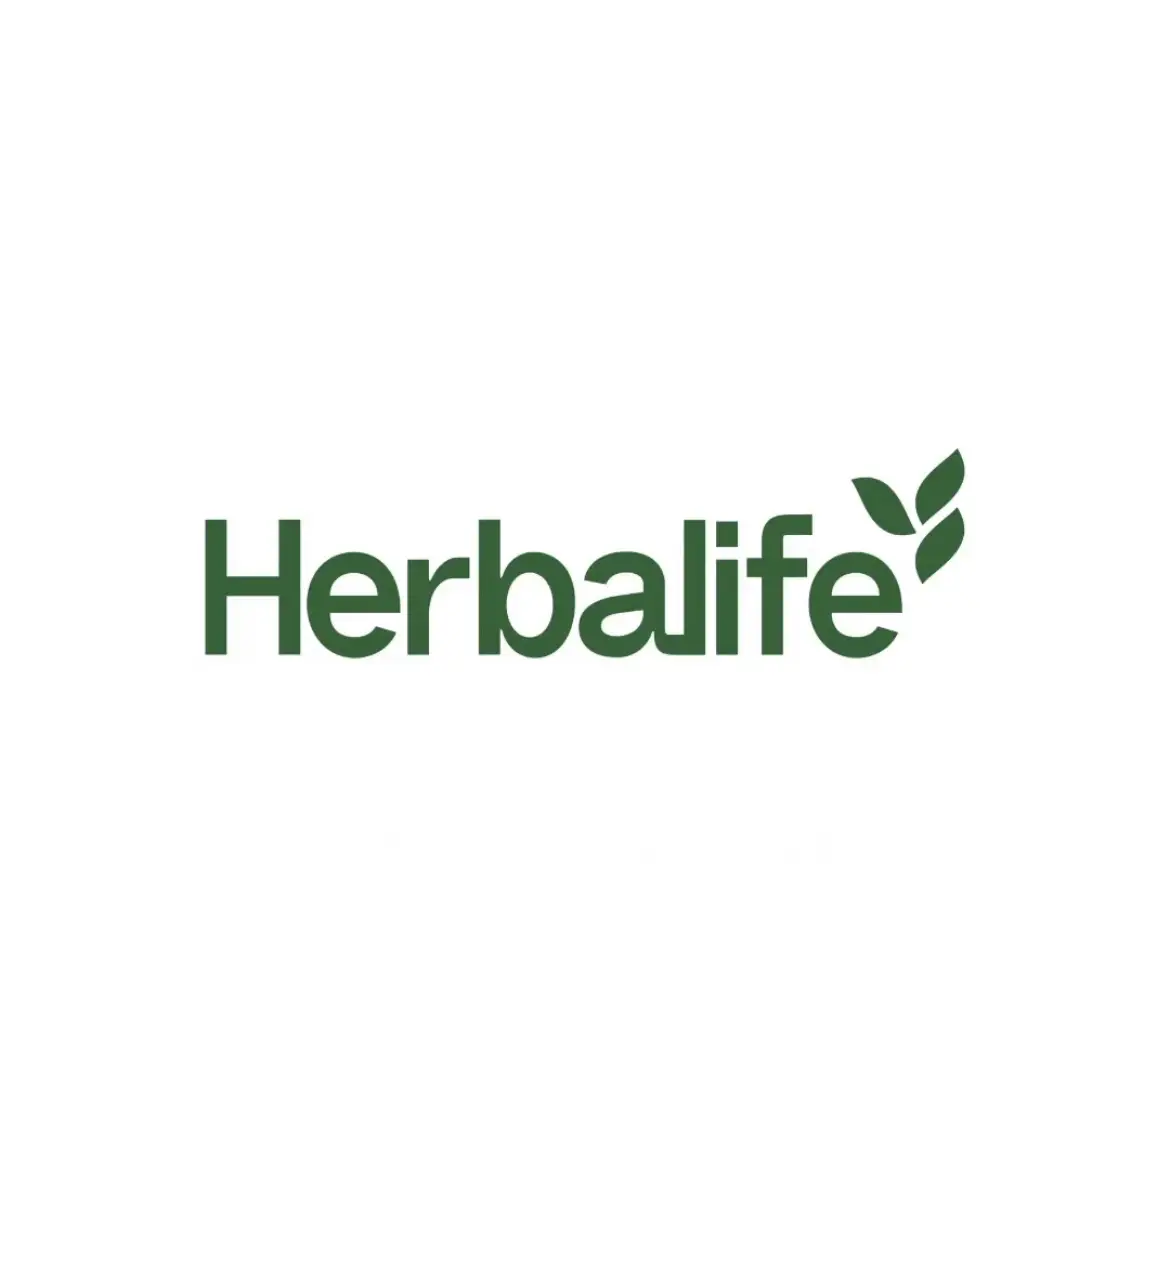 Miembro de Herbalife Nutrition Independiente. Avanzado